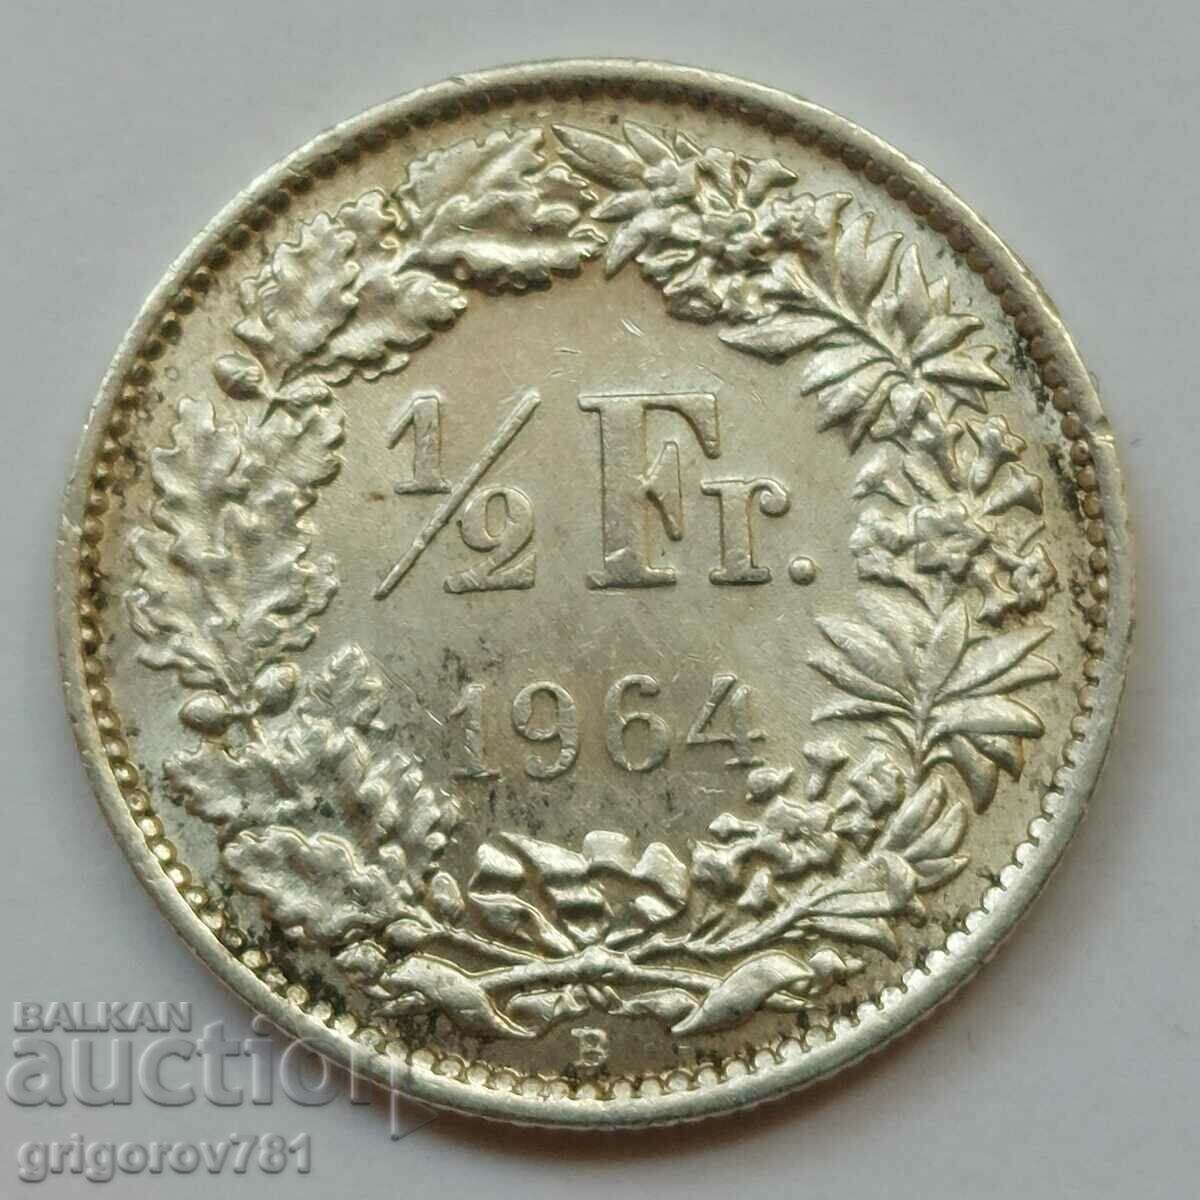 1/2 φράγκο ασήμι Ελβετία 1964 Β - ασημένιο νόμισμα